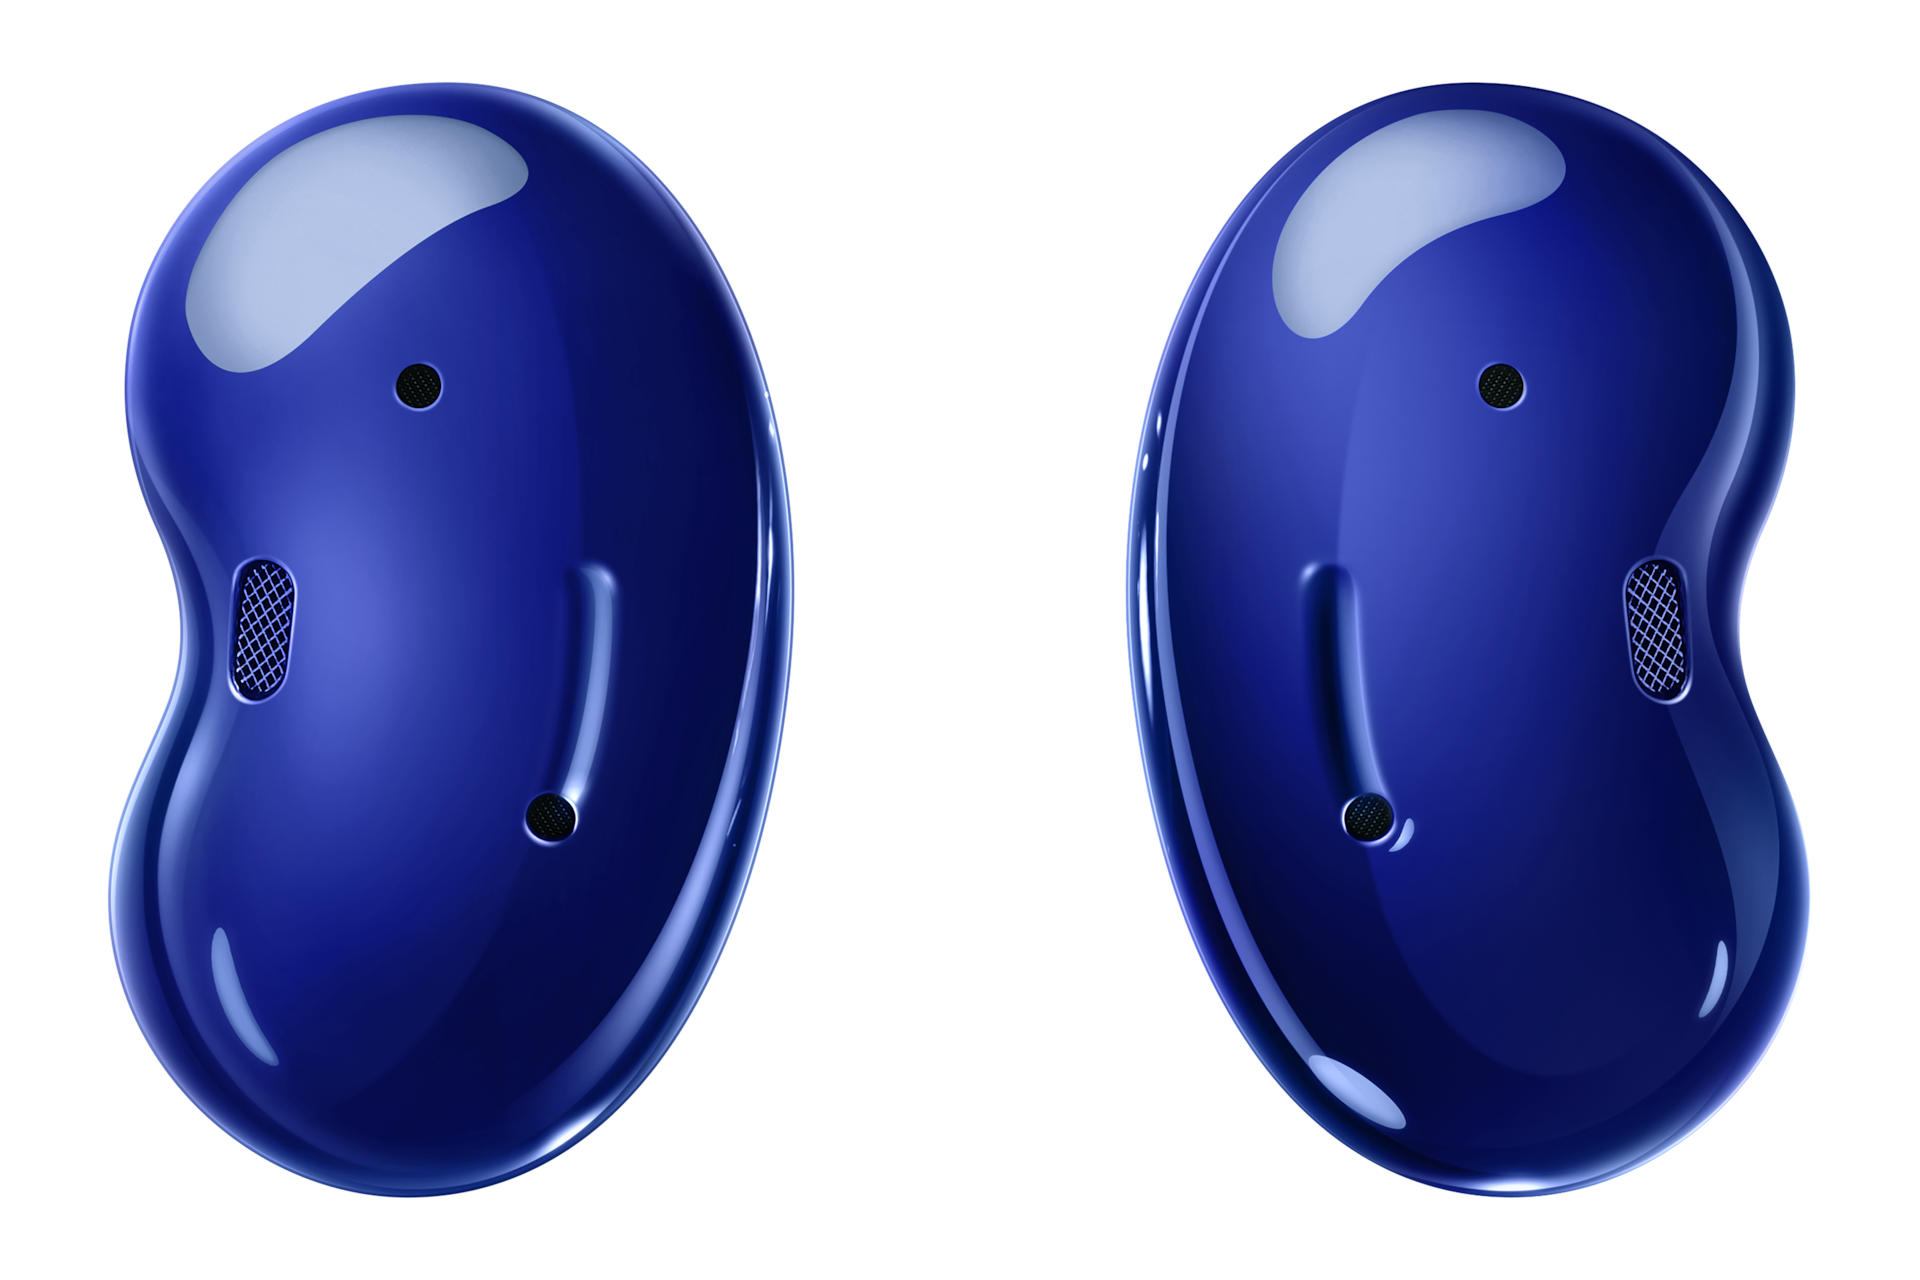 Với màu xanh ngọc trai nổi bật, tai nghe Samsung Galaxy Buds Live sẽ làm bạn say mê ngay từ cái nhìn đầu tiên. Hãy cùng xem hình ảnh để thưởng thức vẻ đẹp và chất lượng của sản phẩm này.